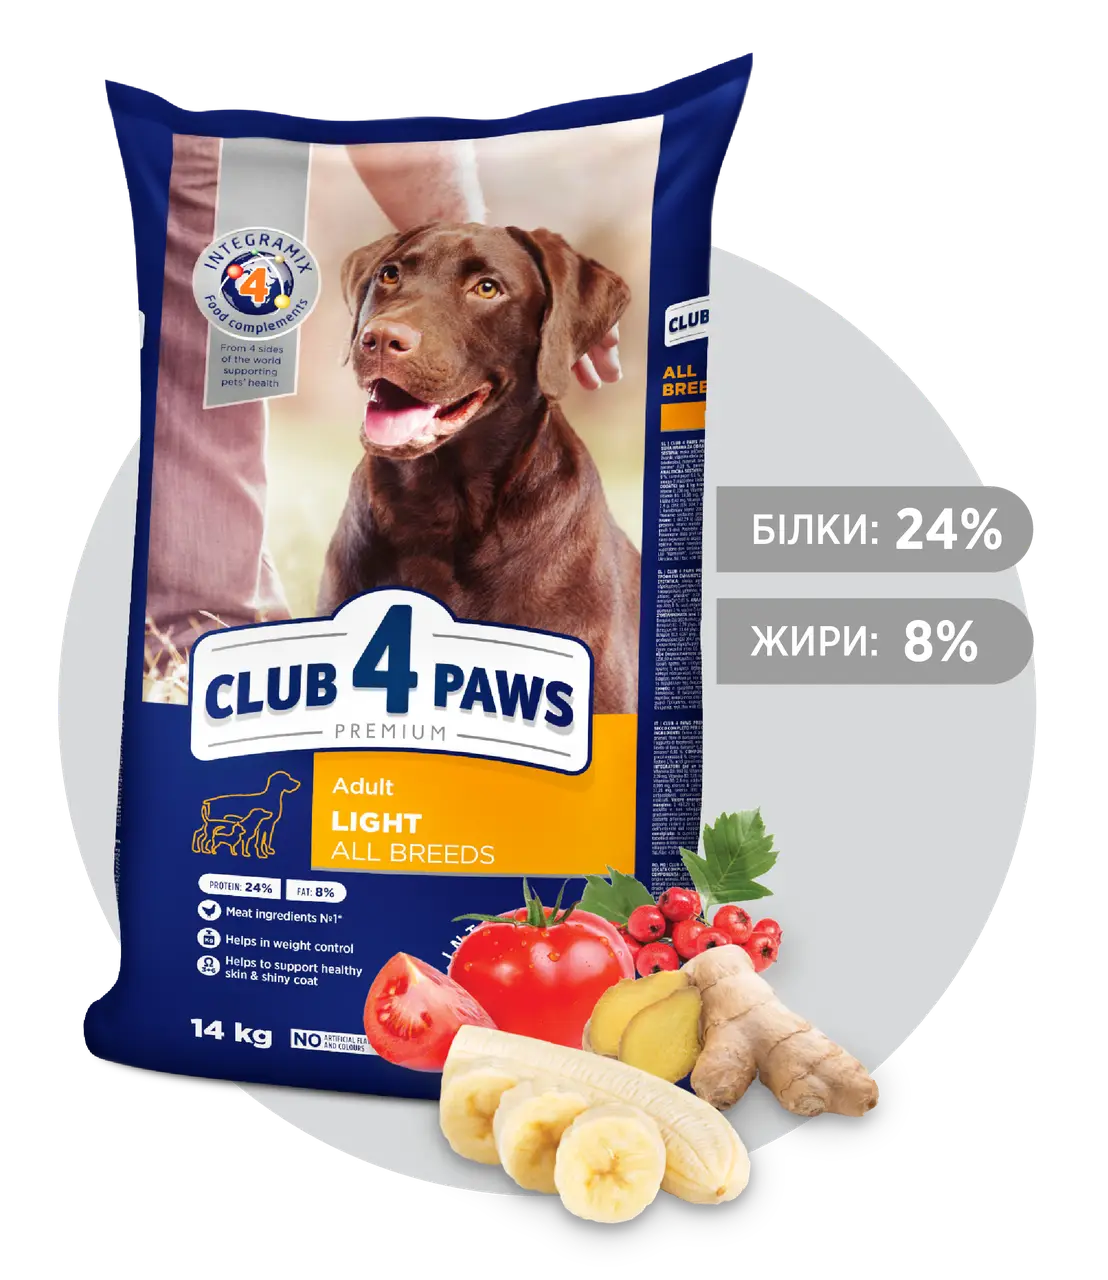 Клуб 4лапи Преміум класу для собак Контроль ваги - 14 кг1